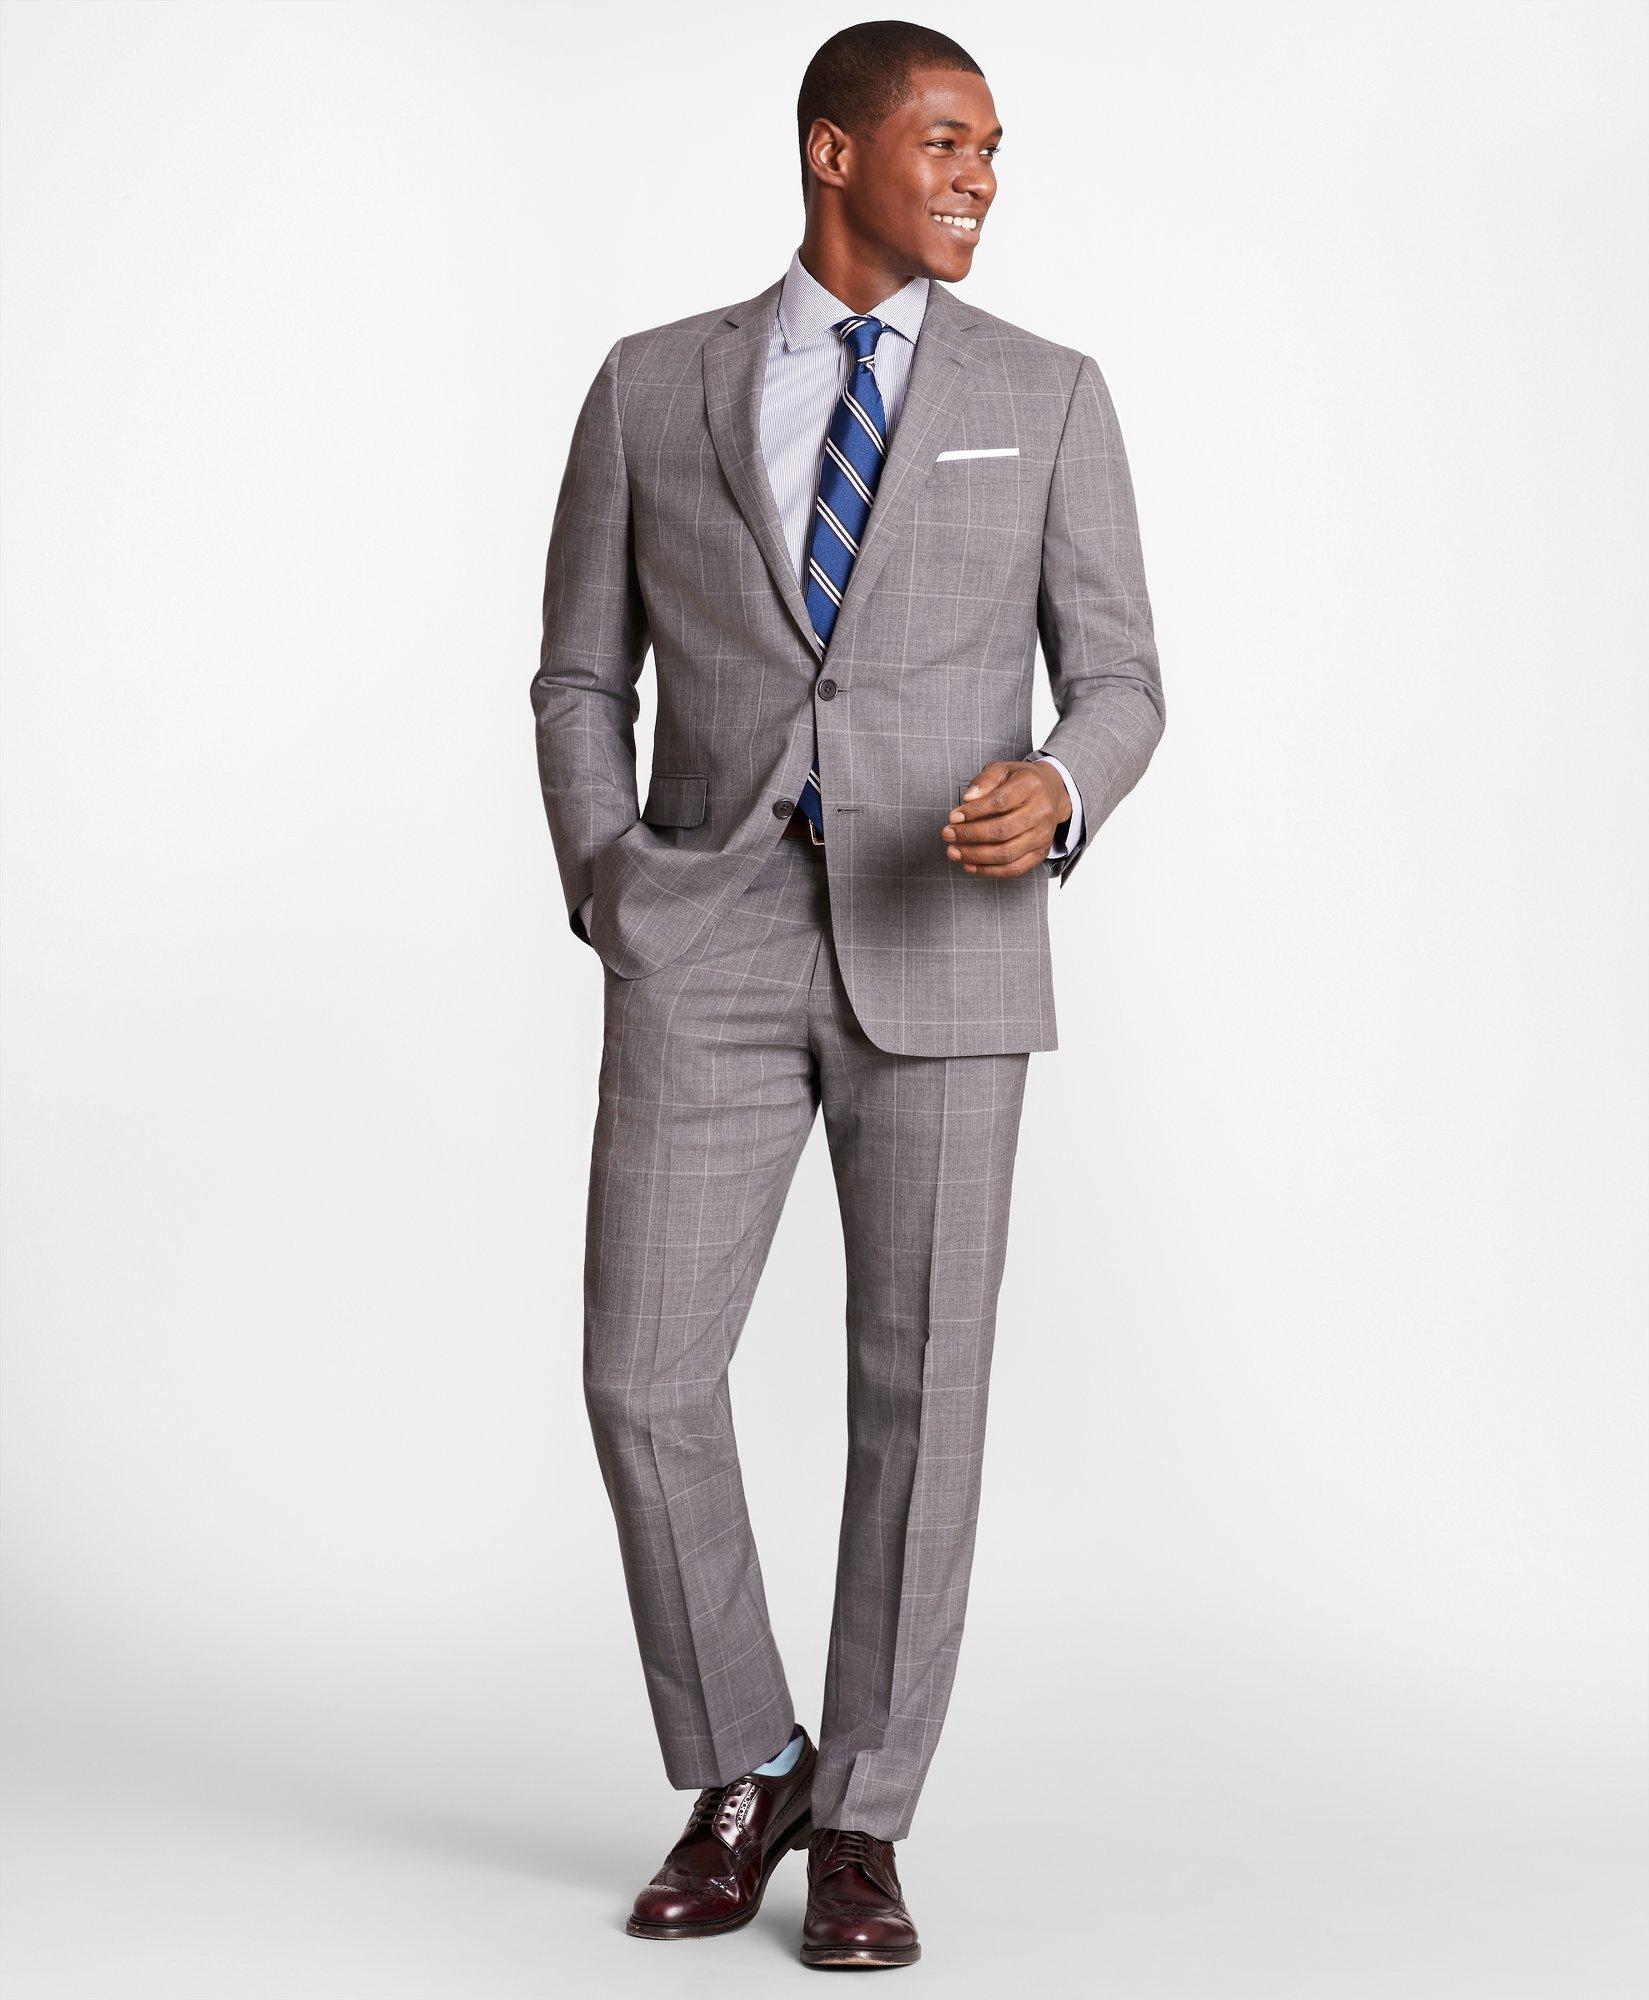 Brooks Brothers Regent-Fit Windowpane Wool Suit Pants